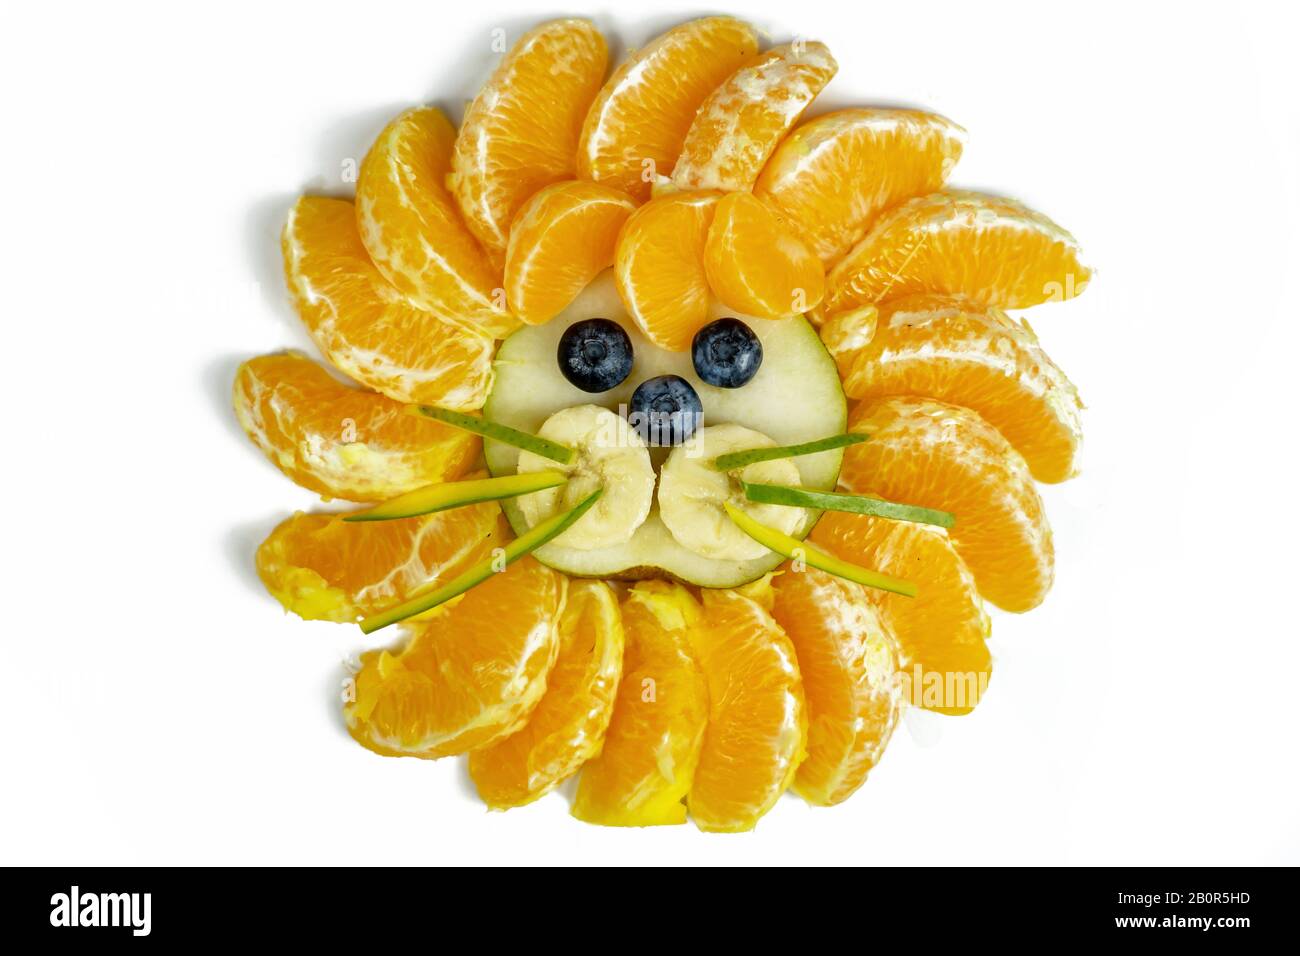 composición aislada de cara de león gracioso con frutas como arándanos naranjas Foto de stock